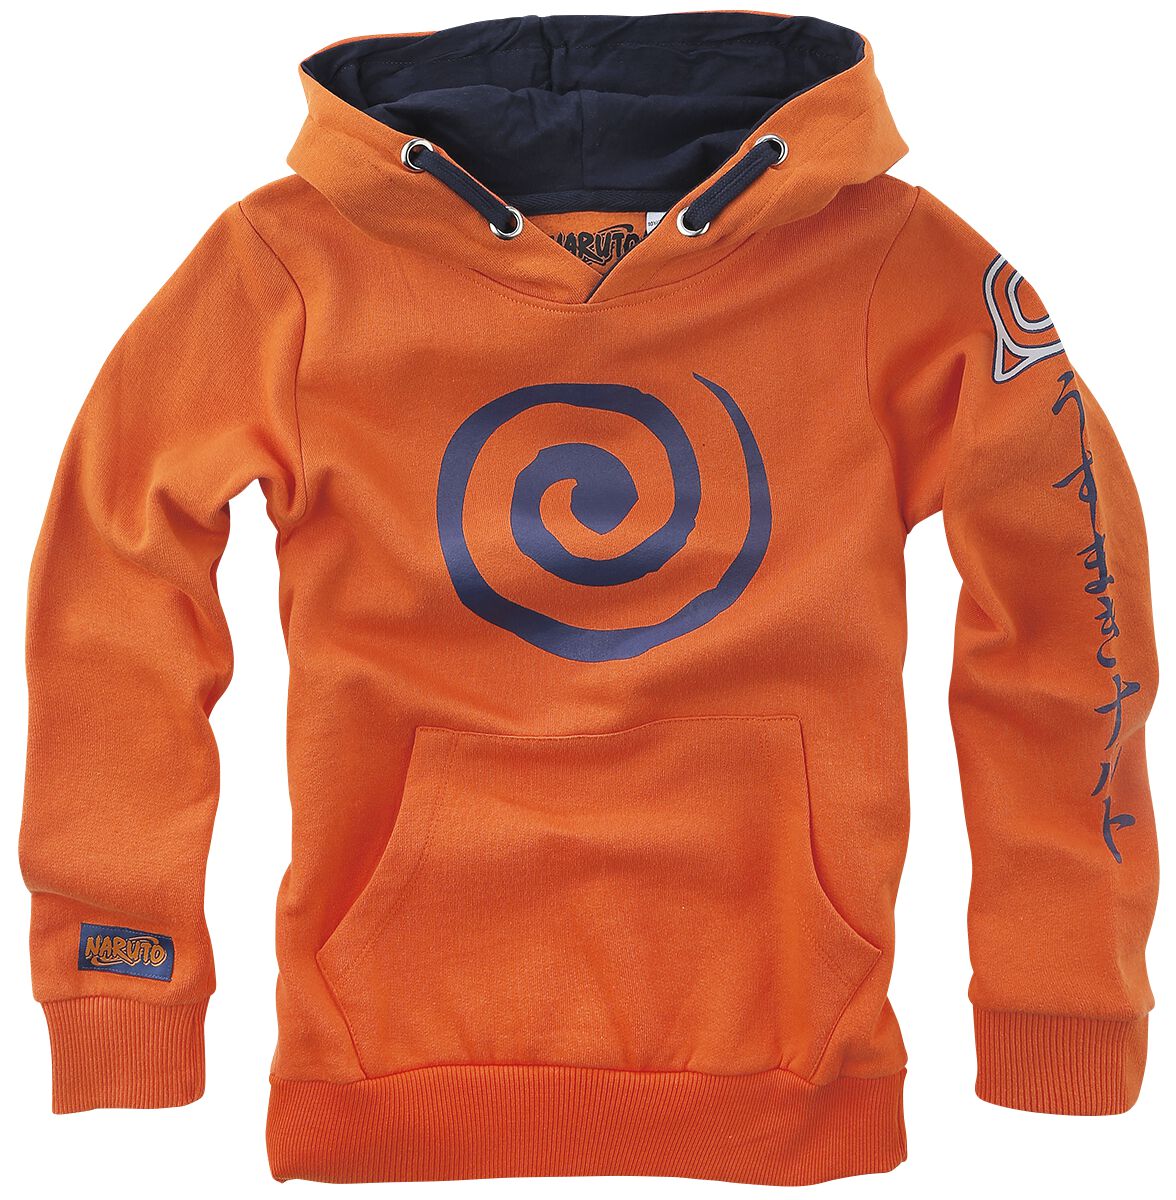 Naruto - Anime Kapuzenpullover - Kids - Sign - 116 bis 164 - Größe 152 - orange  - EMP exklusives Merchandise!